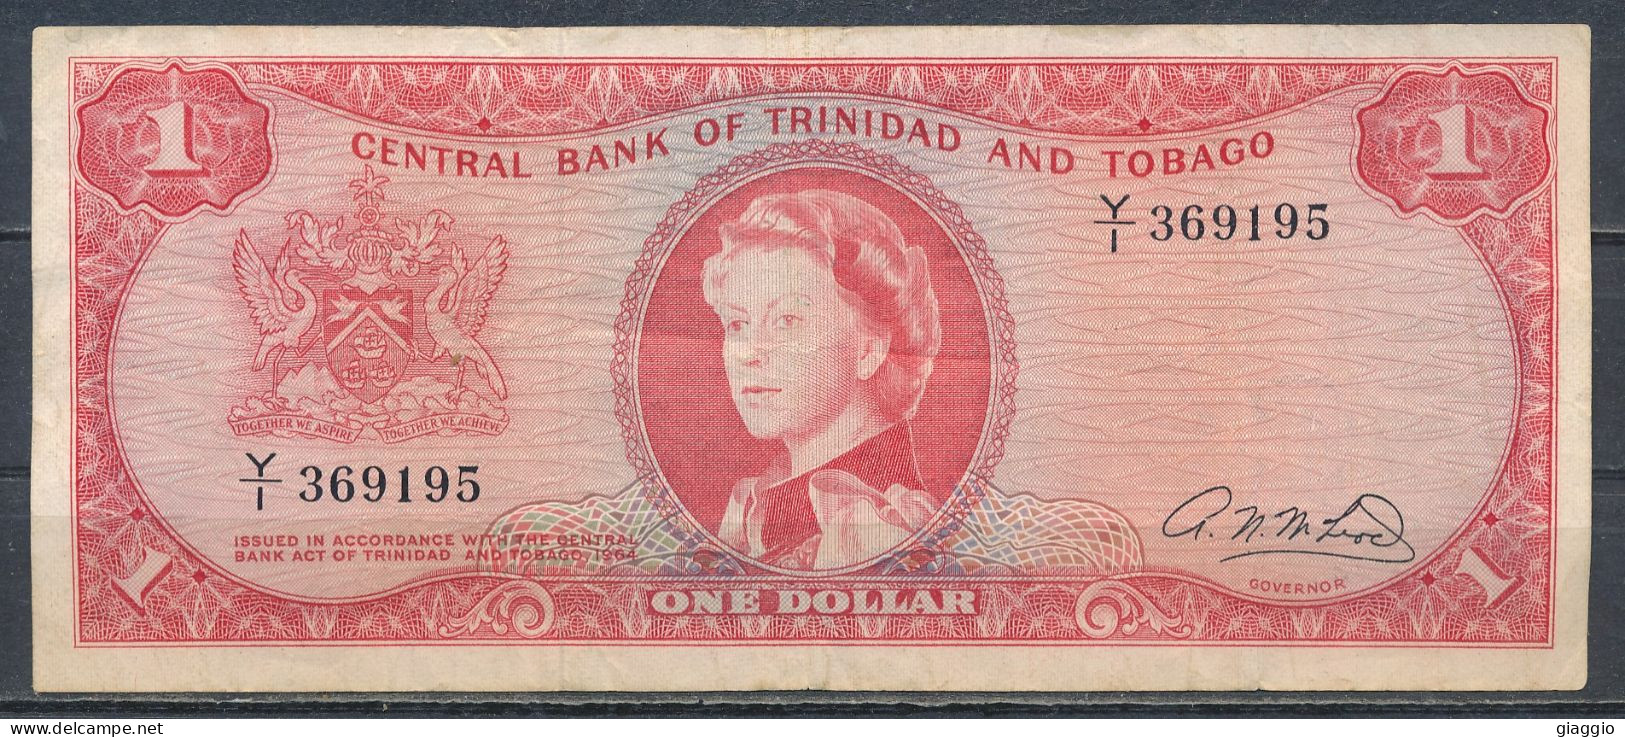 °°° TRINIDAD & TOBAGO 1 DOLLAR 1964 °°° - Trindad & Tobago